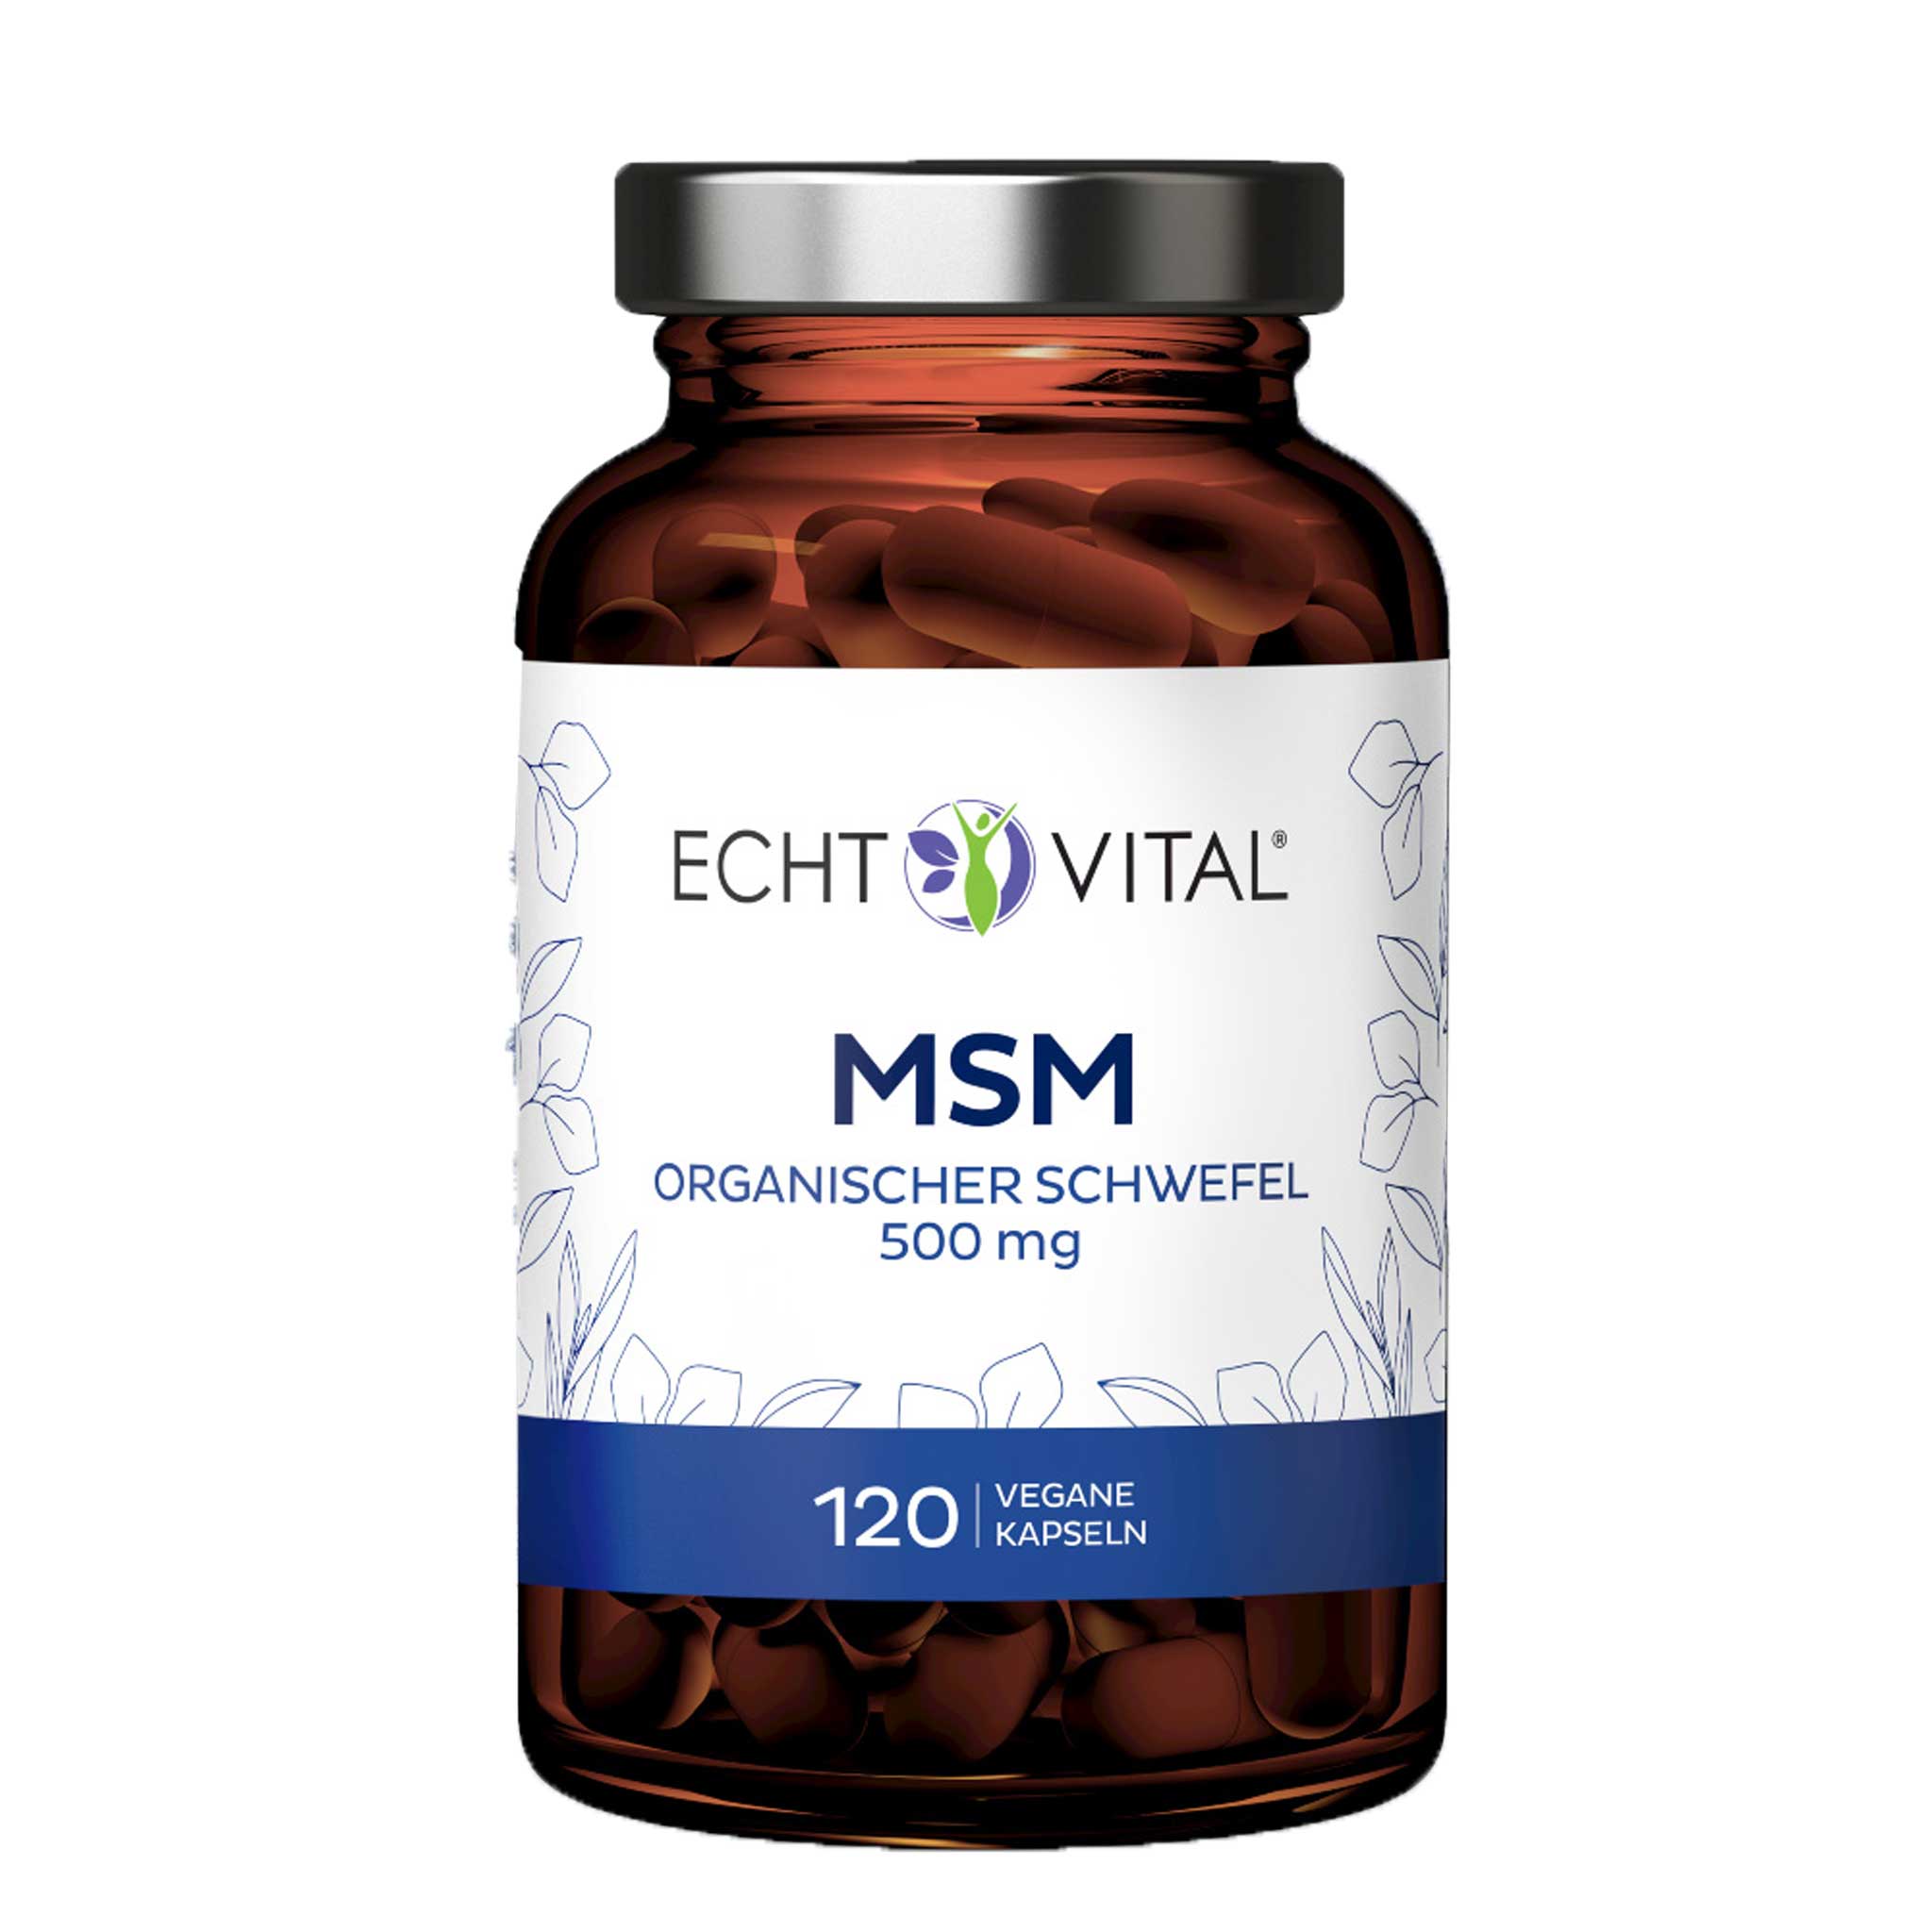 MSM organischer Schwefel von Echt Vital 500 Milligramm beinhaltet 120 vegane Kapseln